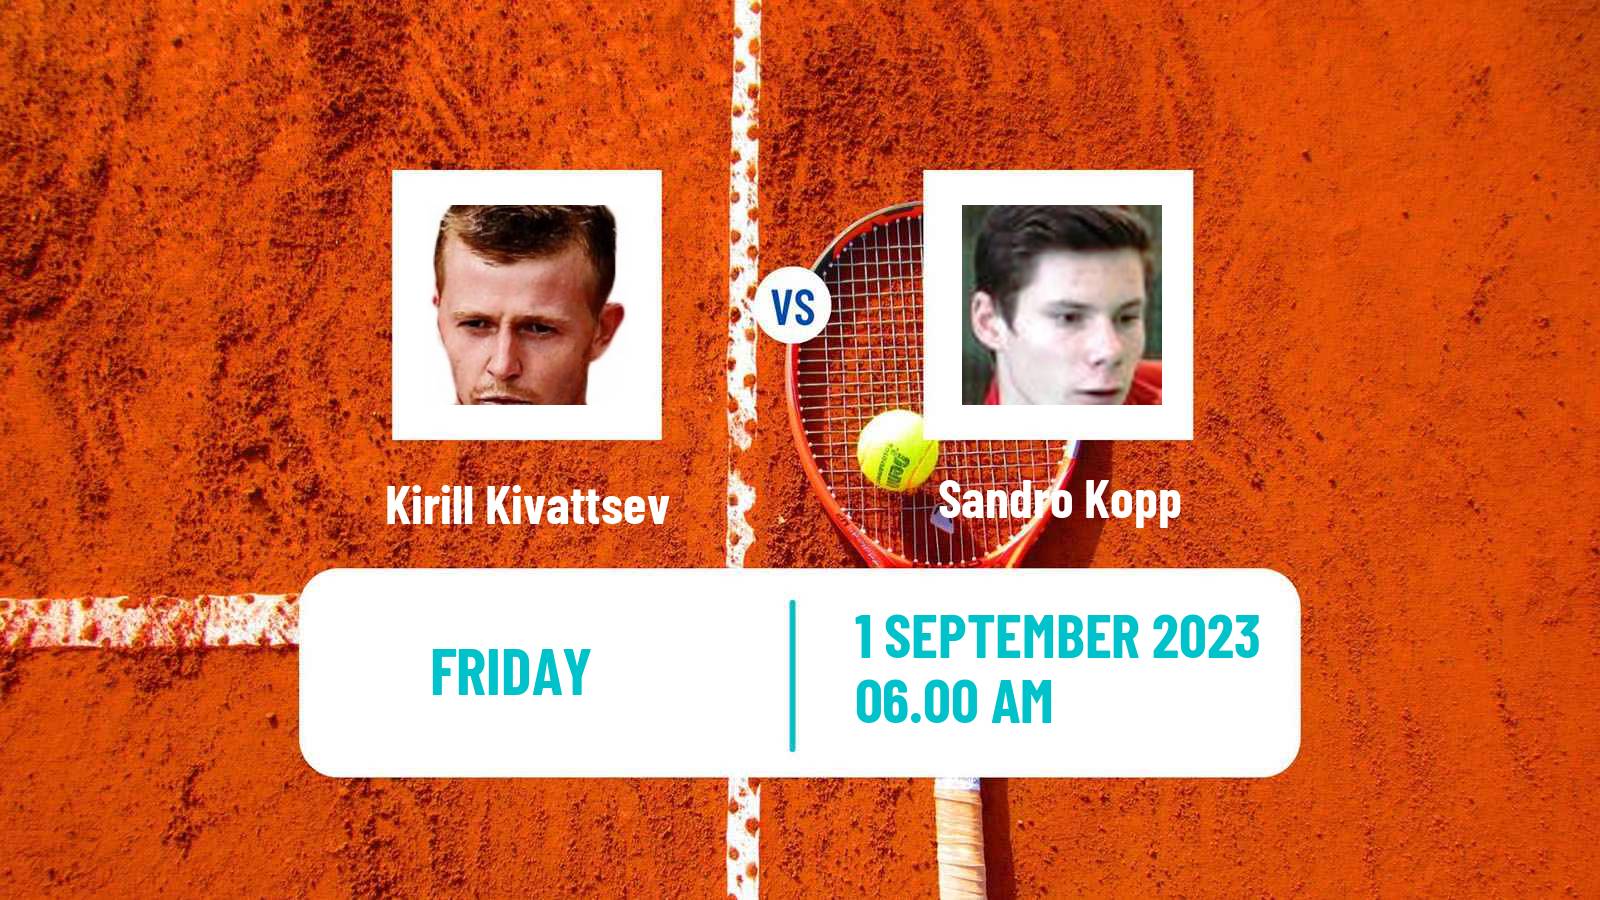 Tennis ITF M25 MarIBOr Men Kirill Kivattsev - Sandro Kopp